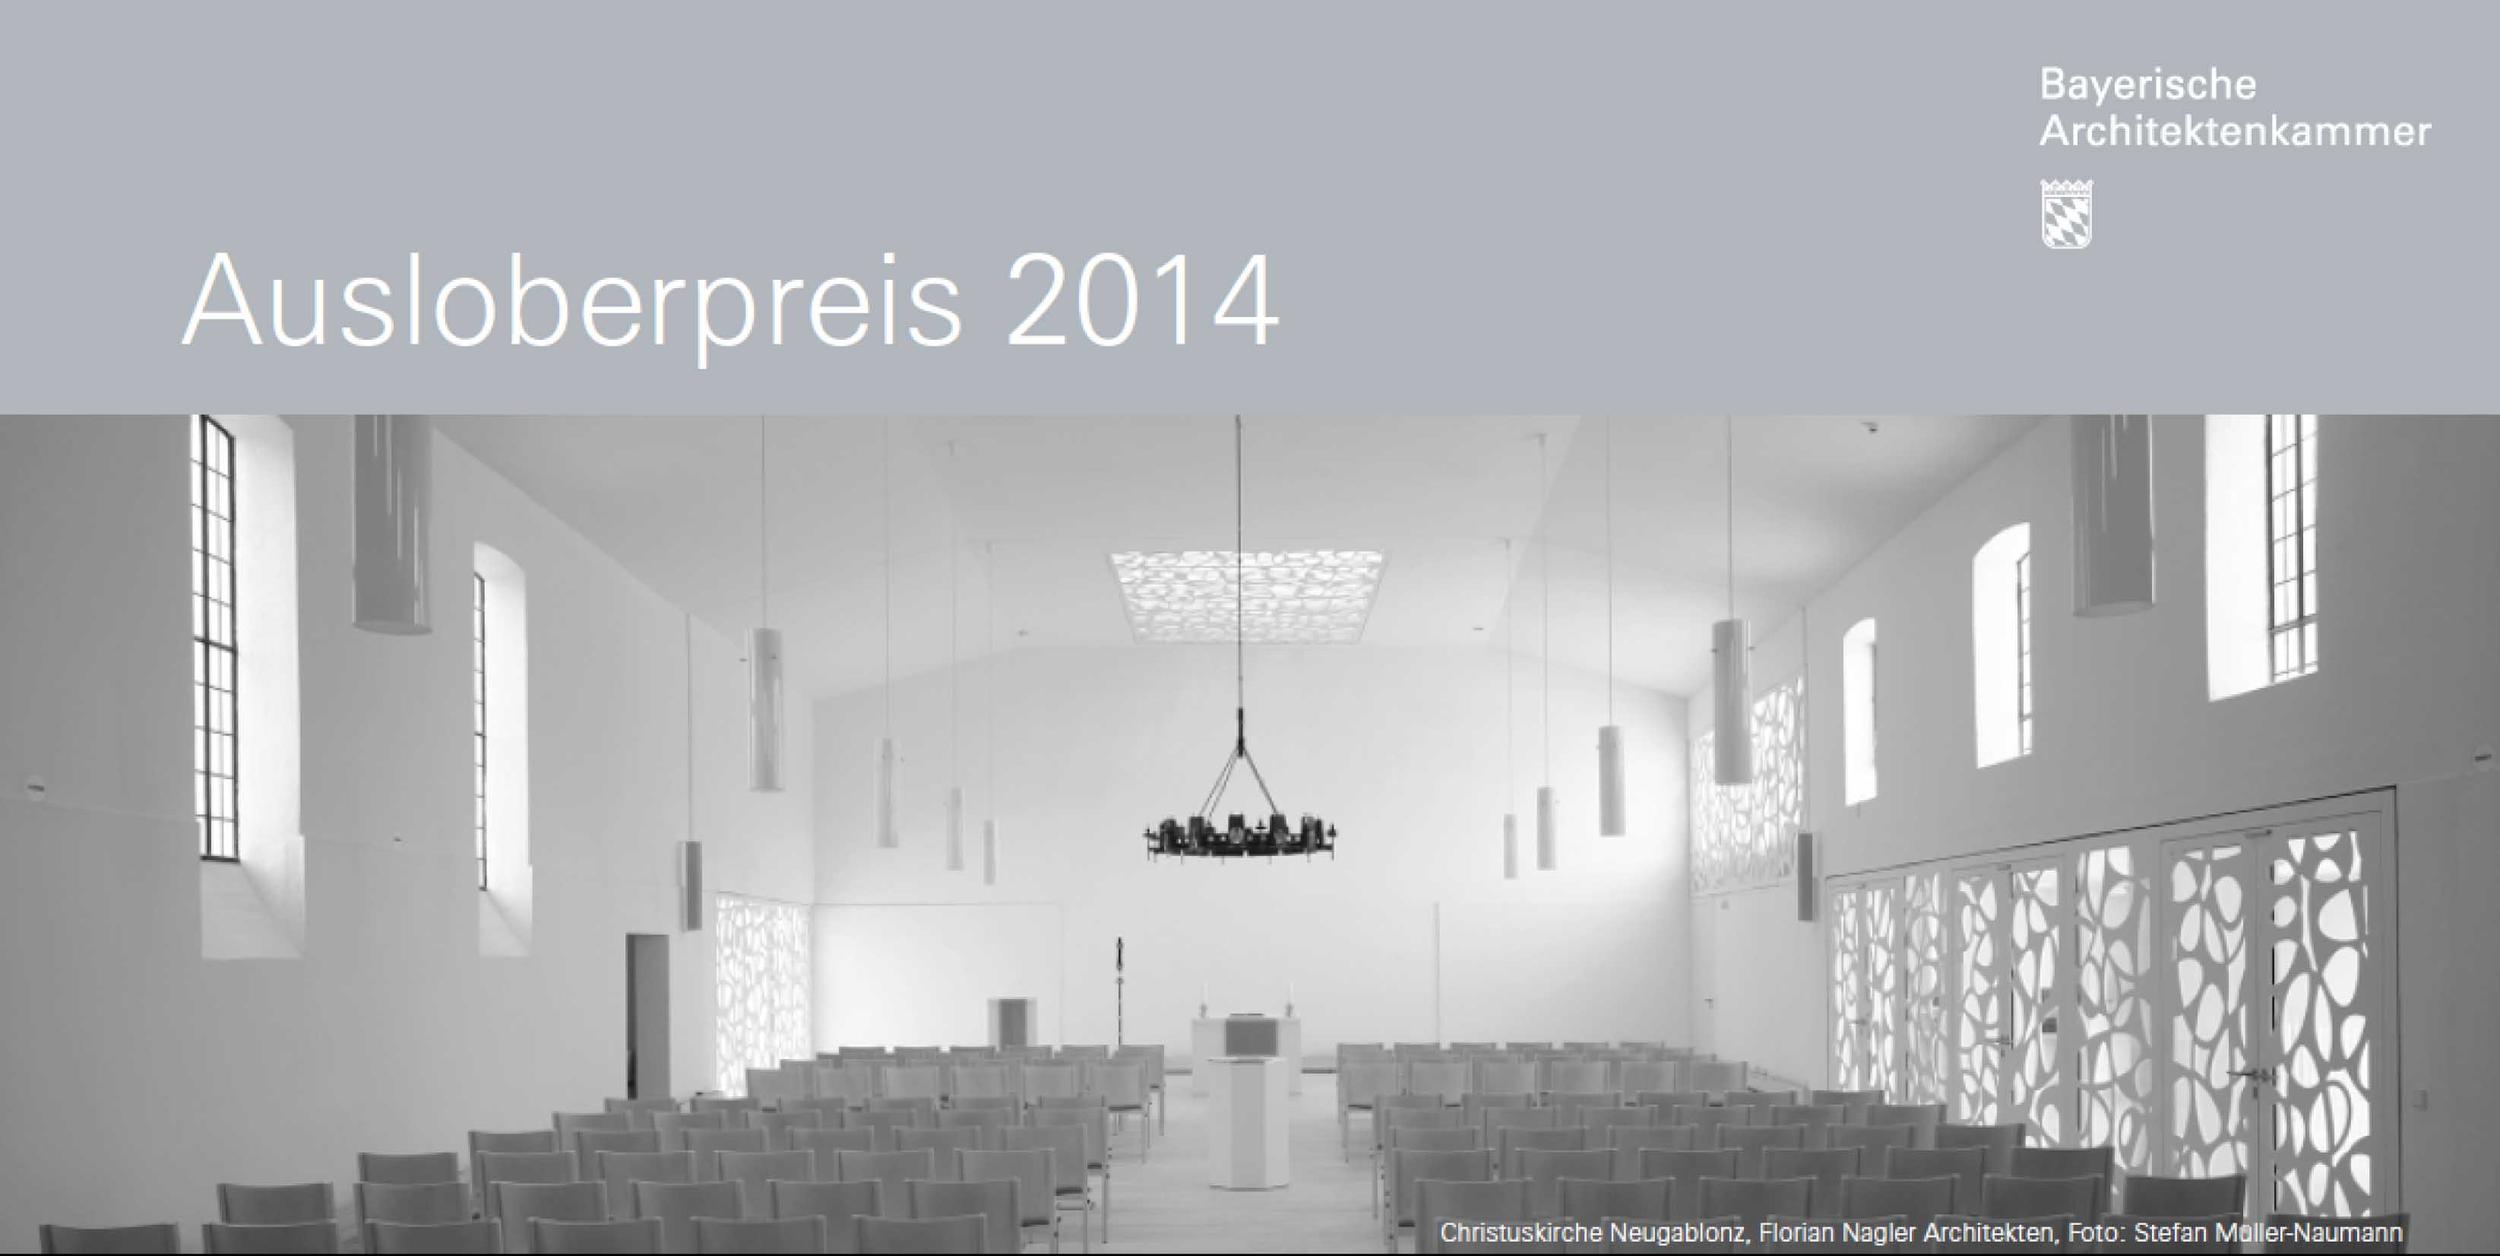 Evangelisch-Lutherische Kirche in Bayern erhält Architekturauszeichnung „Ausloberpreis 2014“